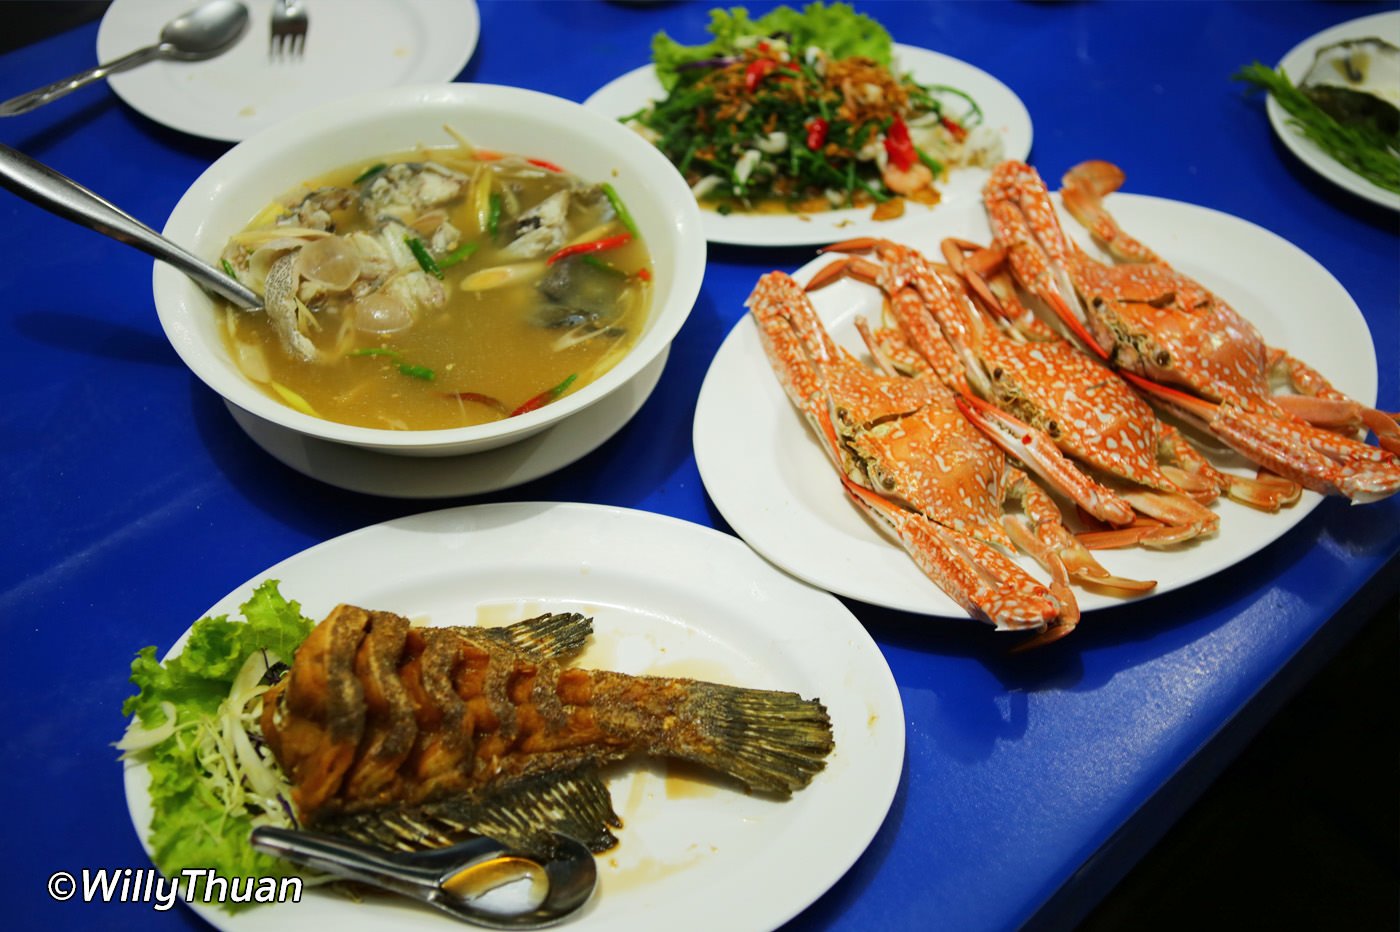 Phuket Floating Restaurants - amazingthailand.org